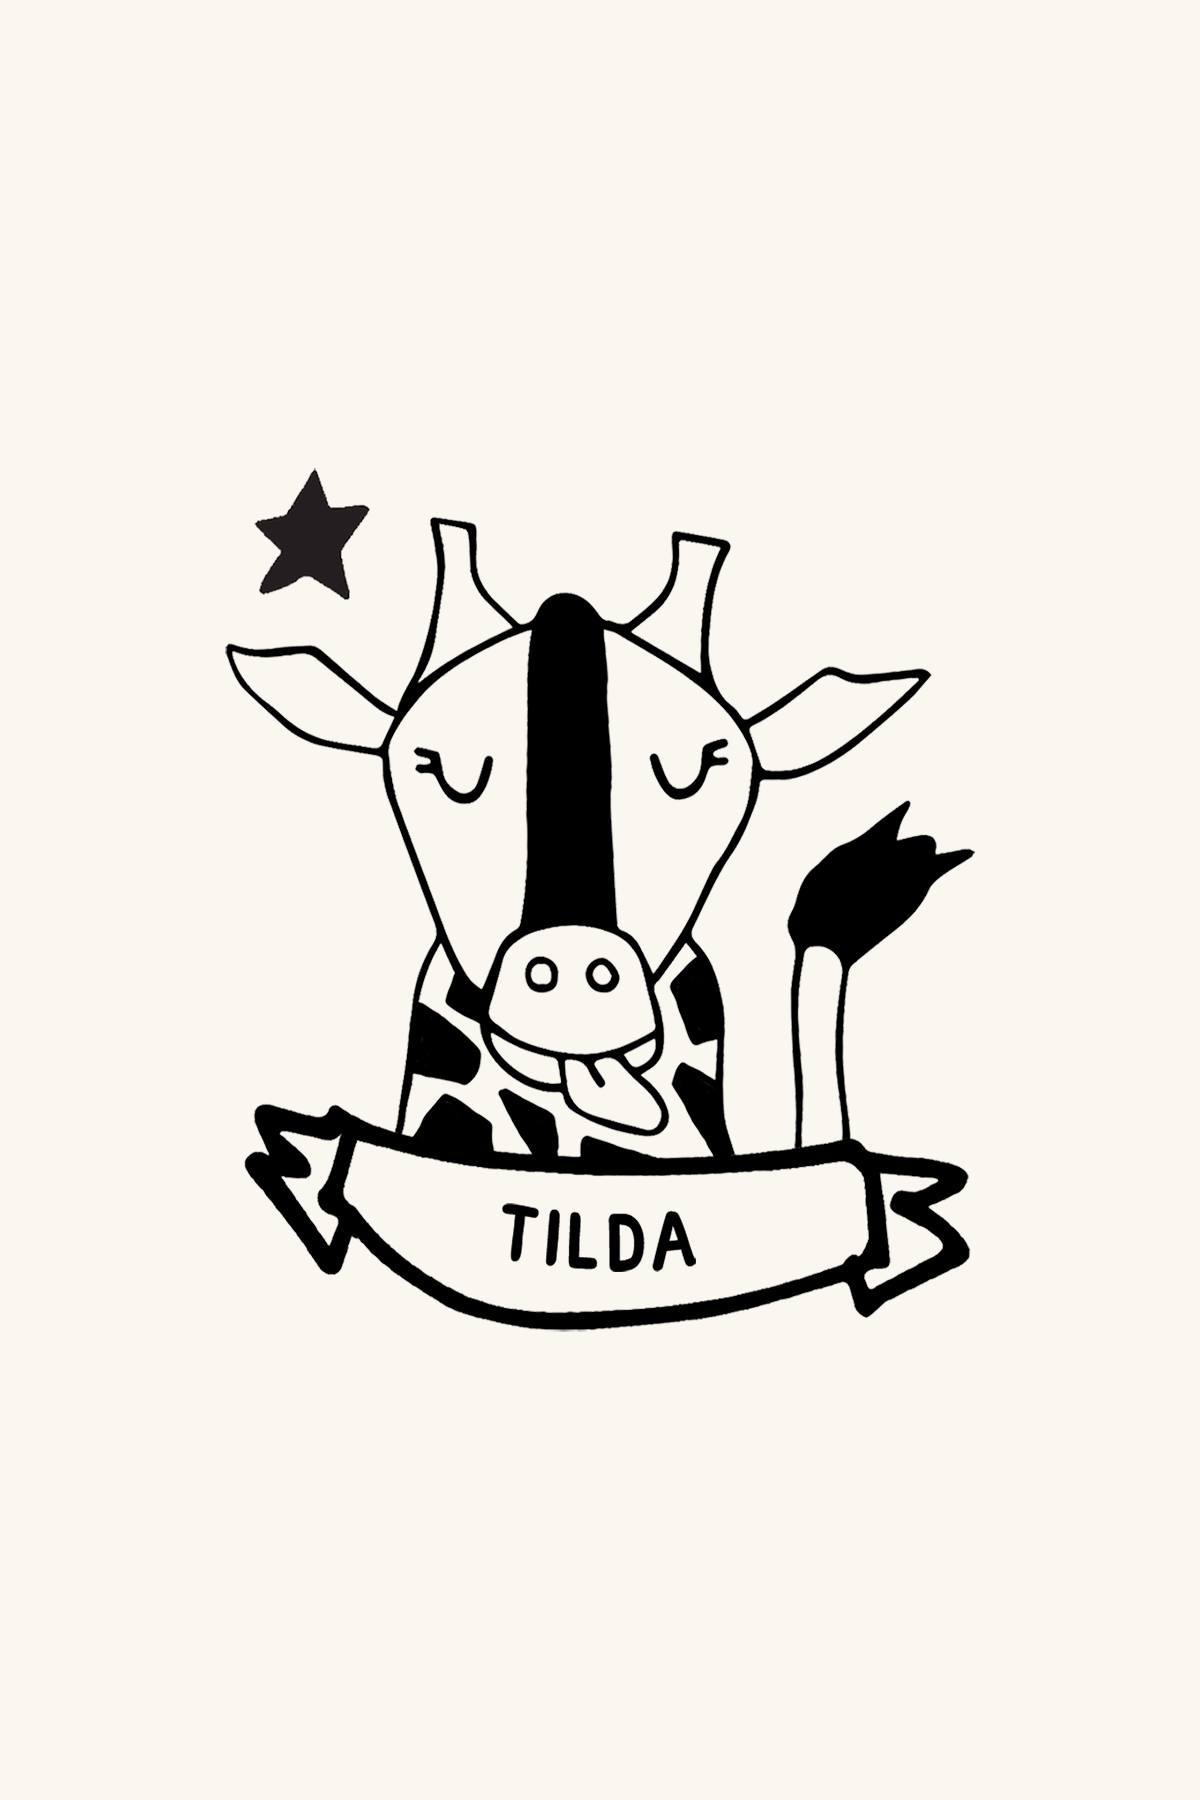 Ilustración de una vaca de dibujos animados con una cinta Ex-libris Jirafa con la etiqueta "tilda" debajo y una estrella sobre su cabeza. La vaca aparece feliz, con una gran sonrisa y los ojos cerrados. (Nombre de la marca: Les Tampones de Roser)